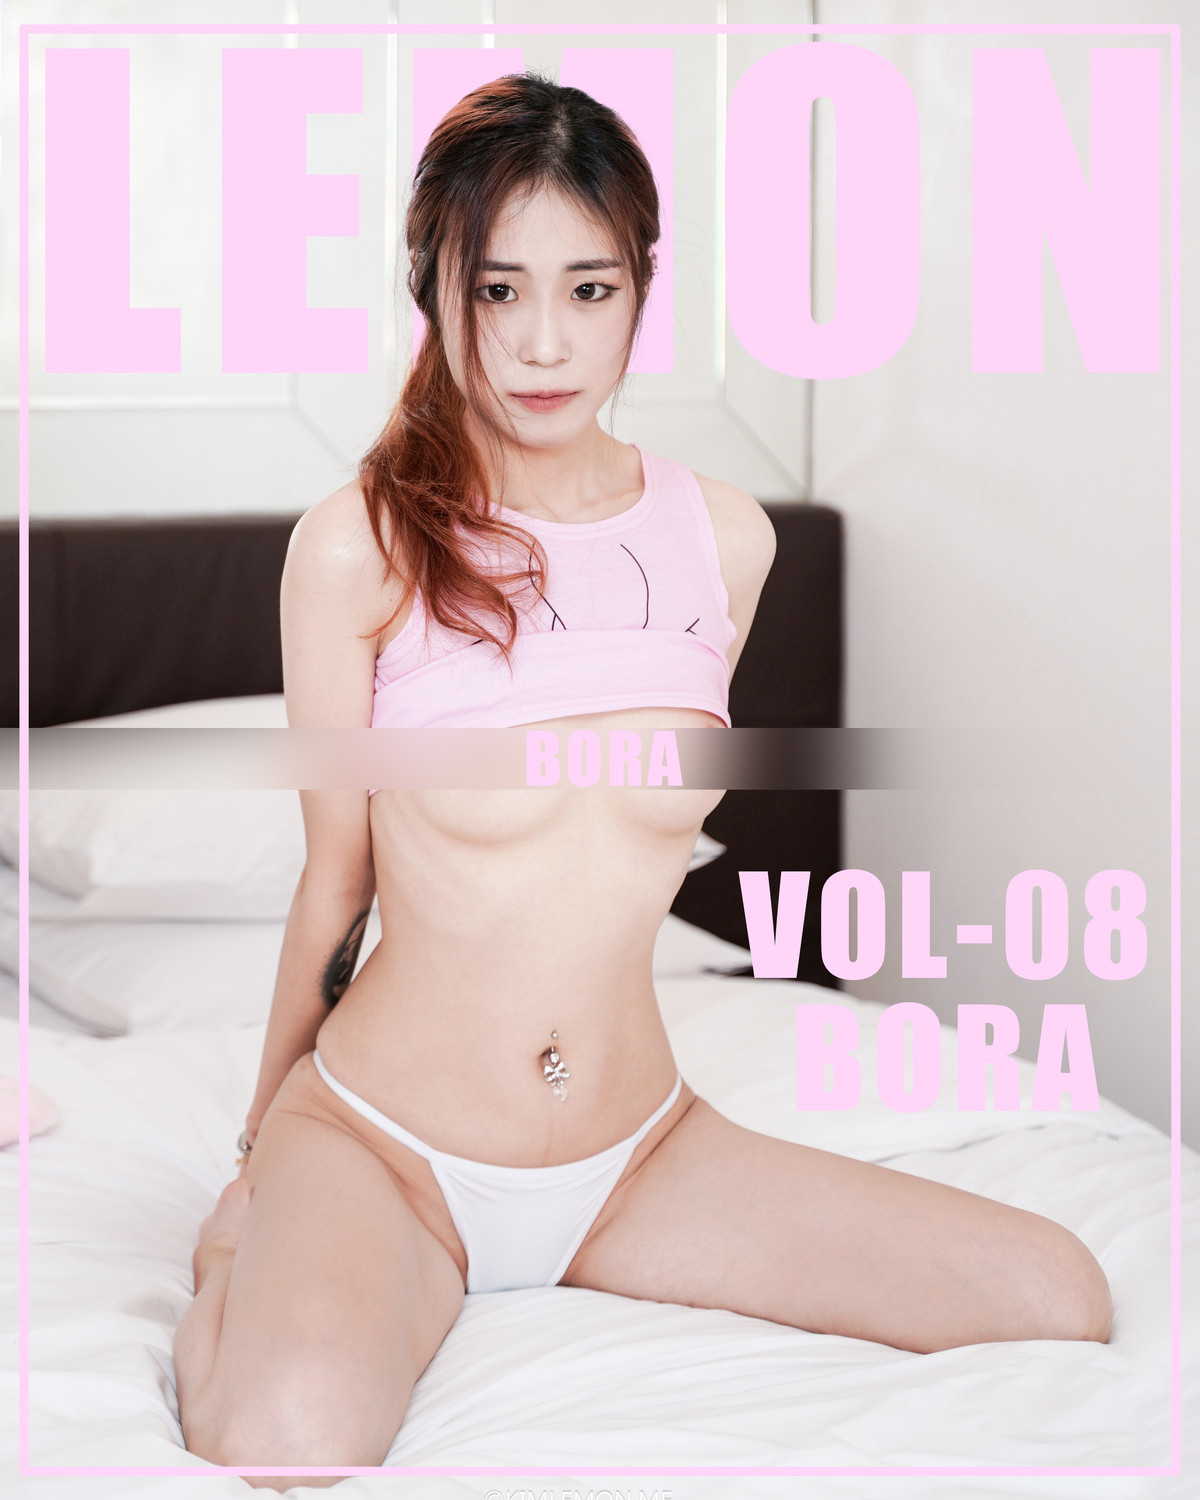 Bora 보라, [KIMLEMON] Vol.08 Photobook(1)